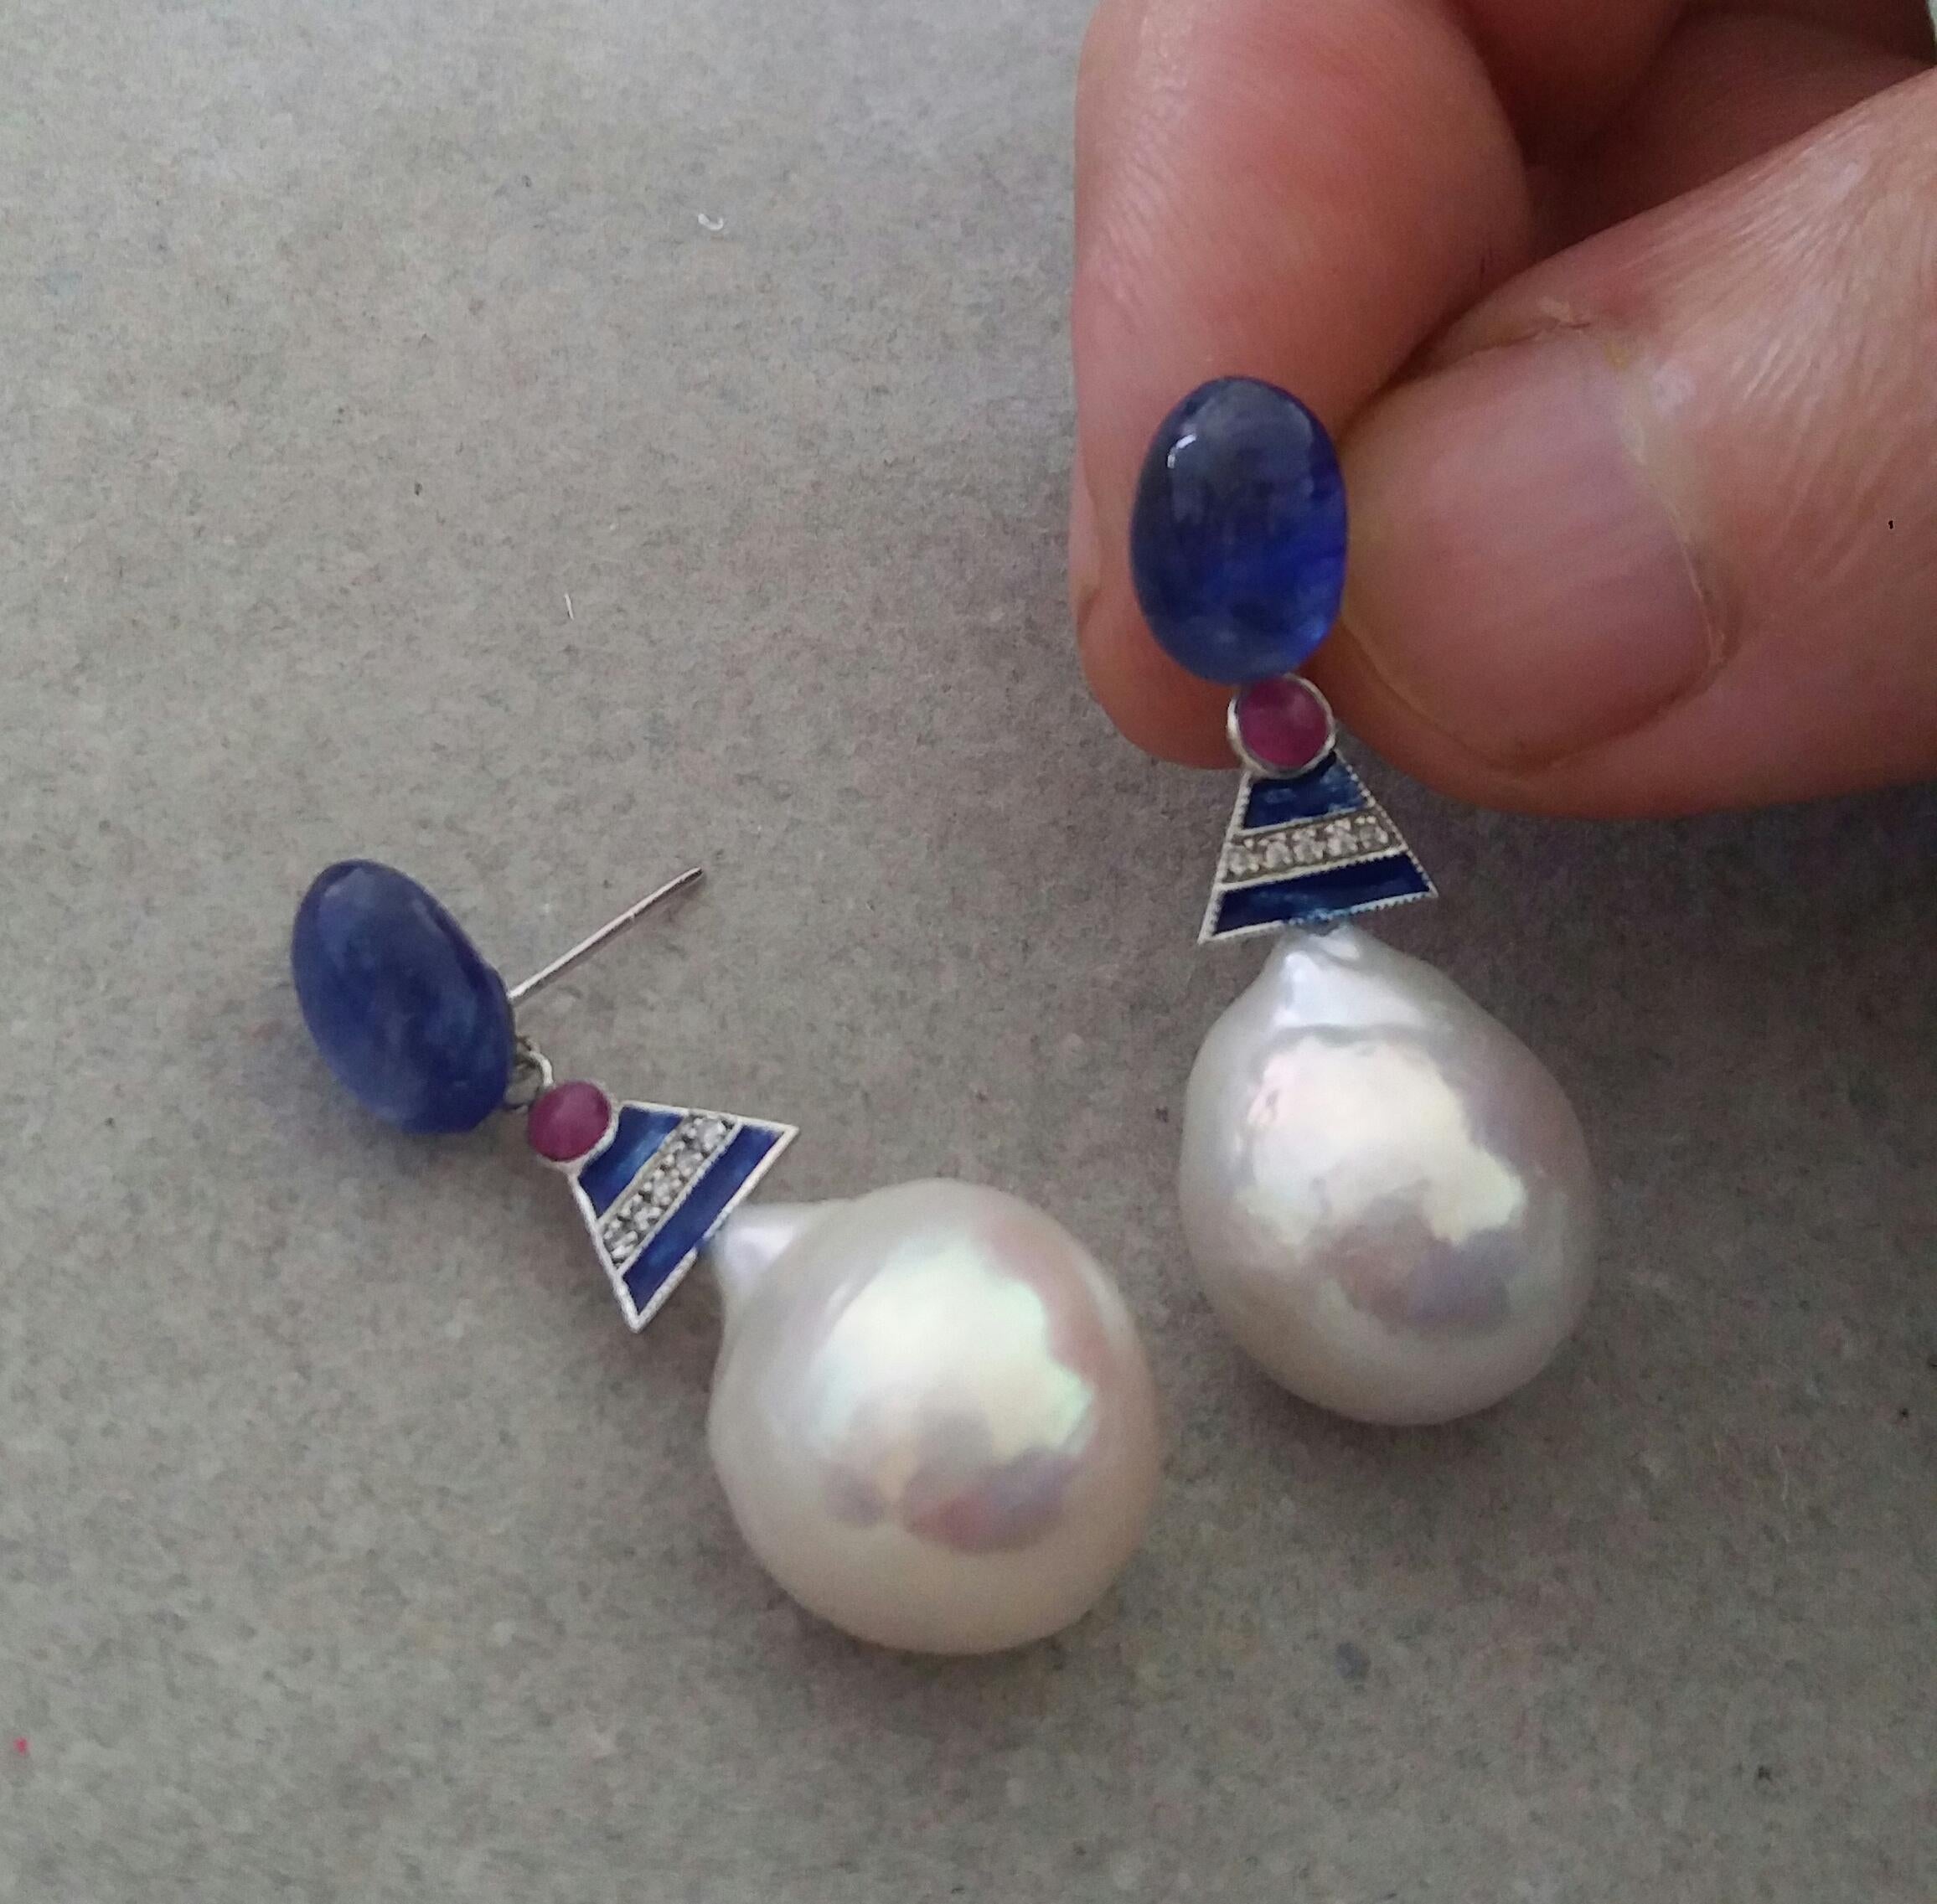 2  Saphir bleu cabochons ovales 7,5 x 10 mm. sont les parties supérieures, puis les parties centrales sont en or blanc, 2 petits cabochons rubis ronds, 10 cabochons ronds pleine taille  les parties inférieures sont composées de deux grandes perles